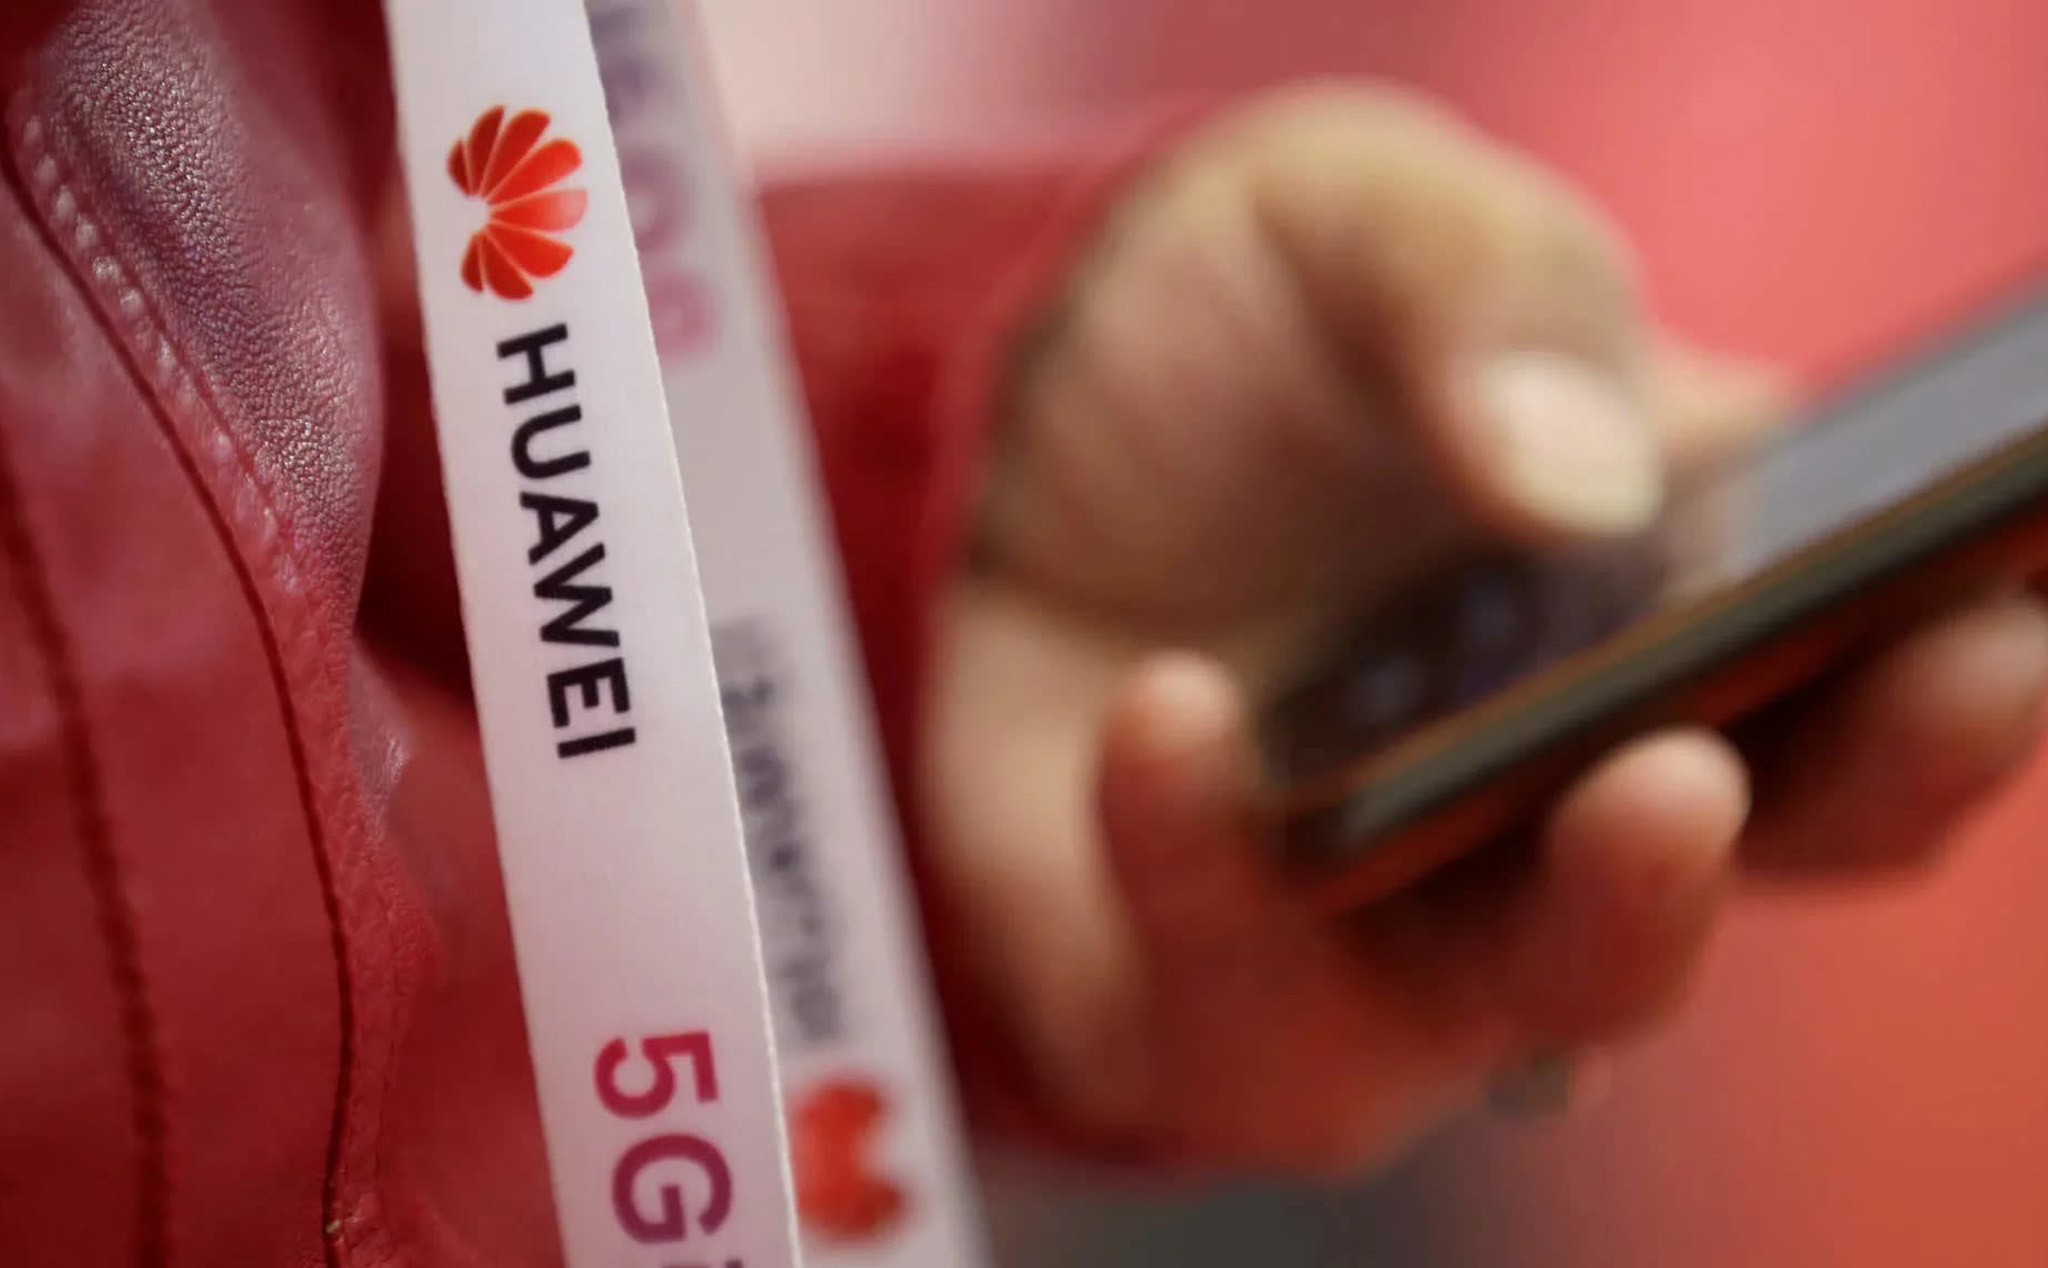 Trung Quốc yêu cầu Mỹ “ngưng o ép vô lý” Huawei